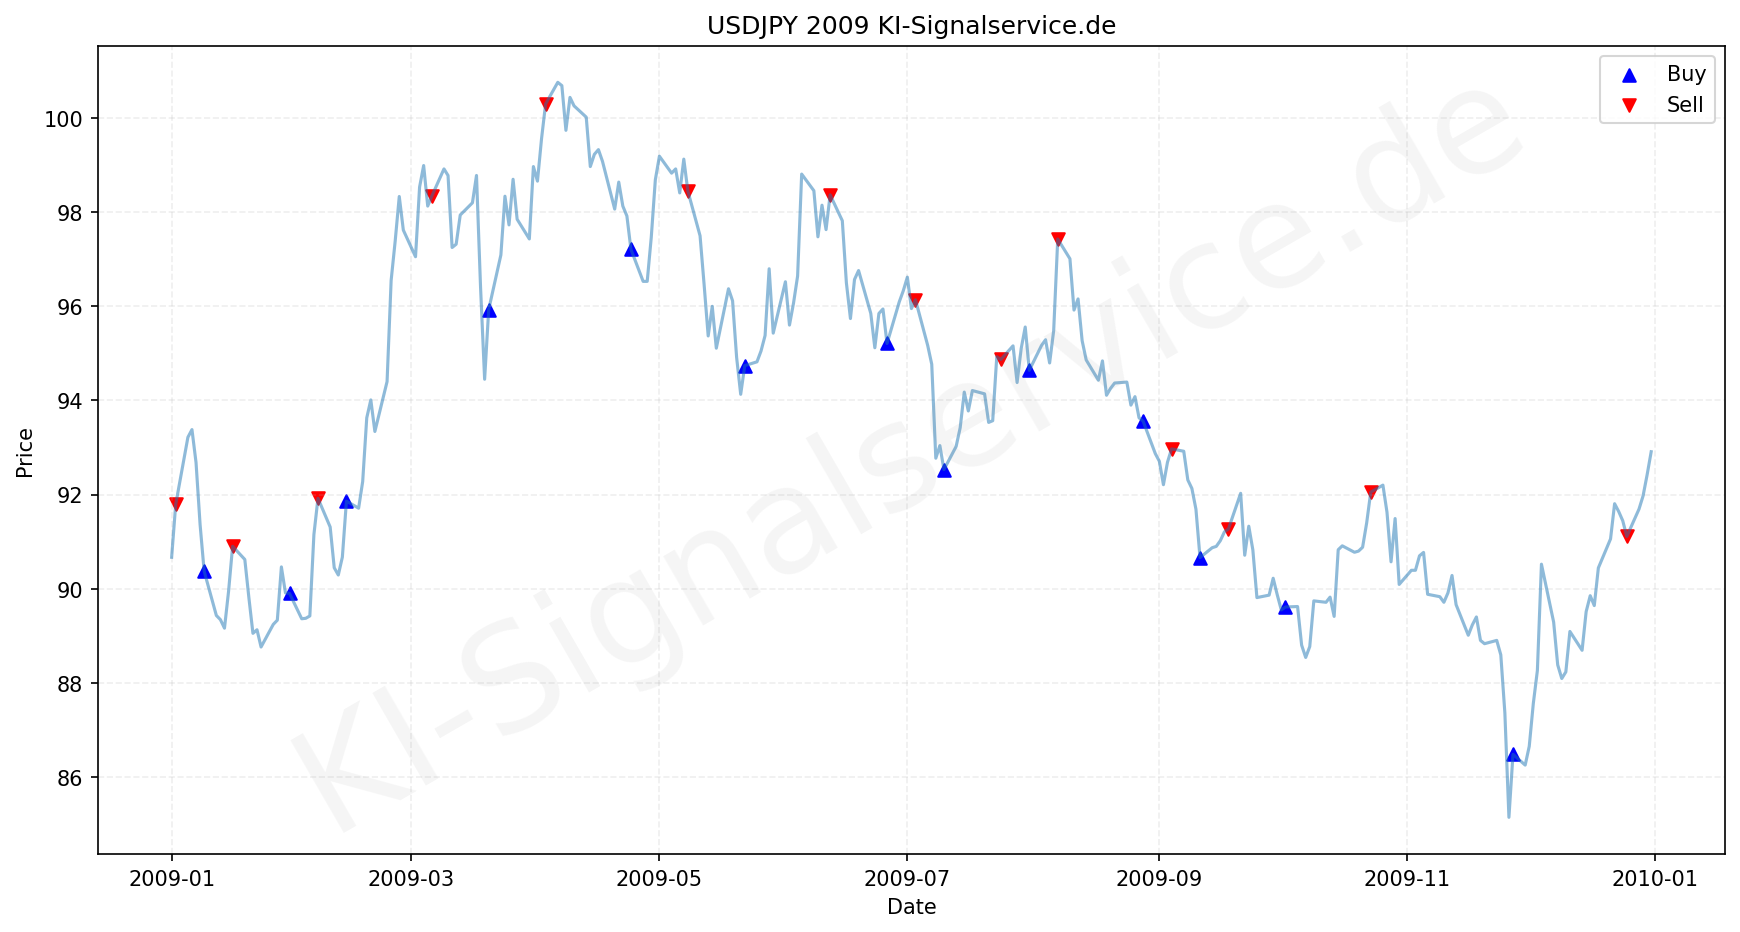 USDJPY Chart - KI Tradingsignale 2009